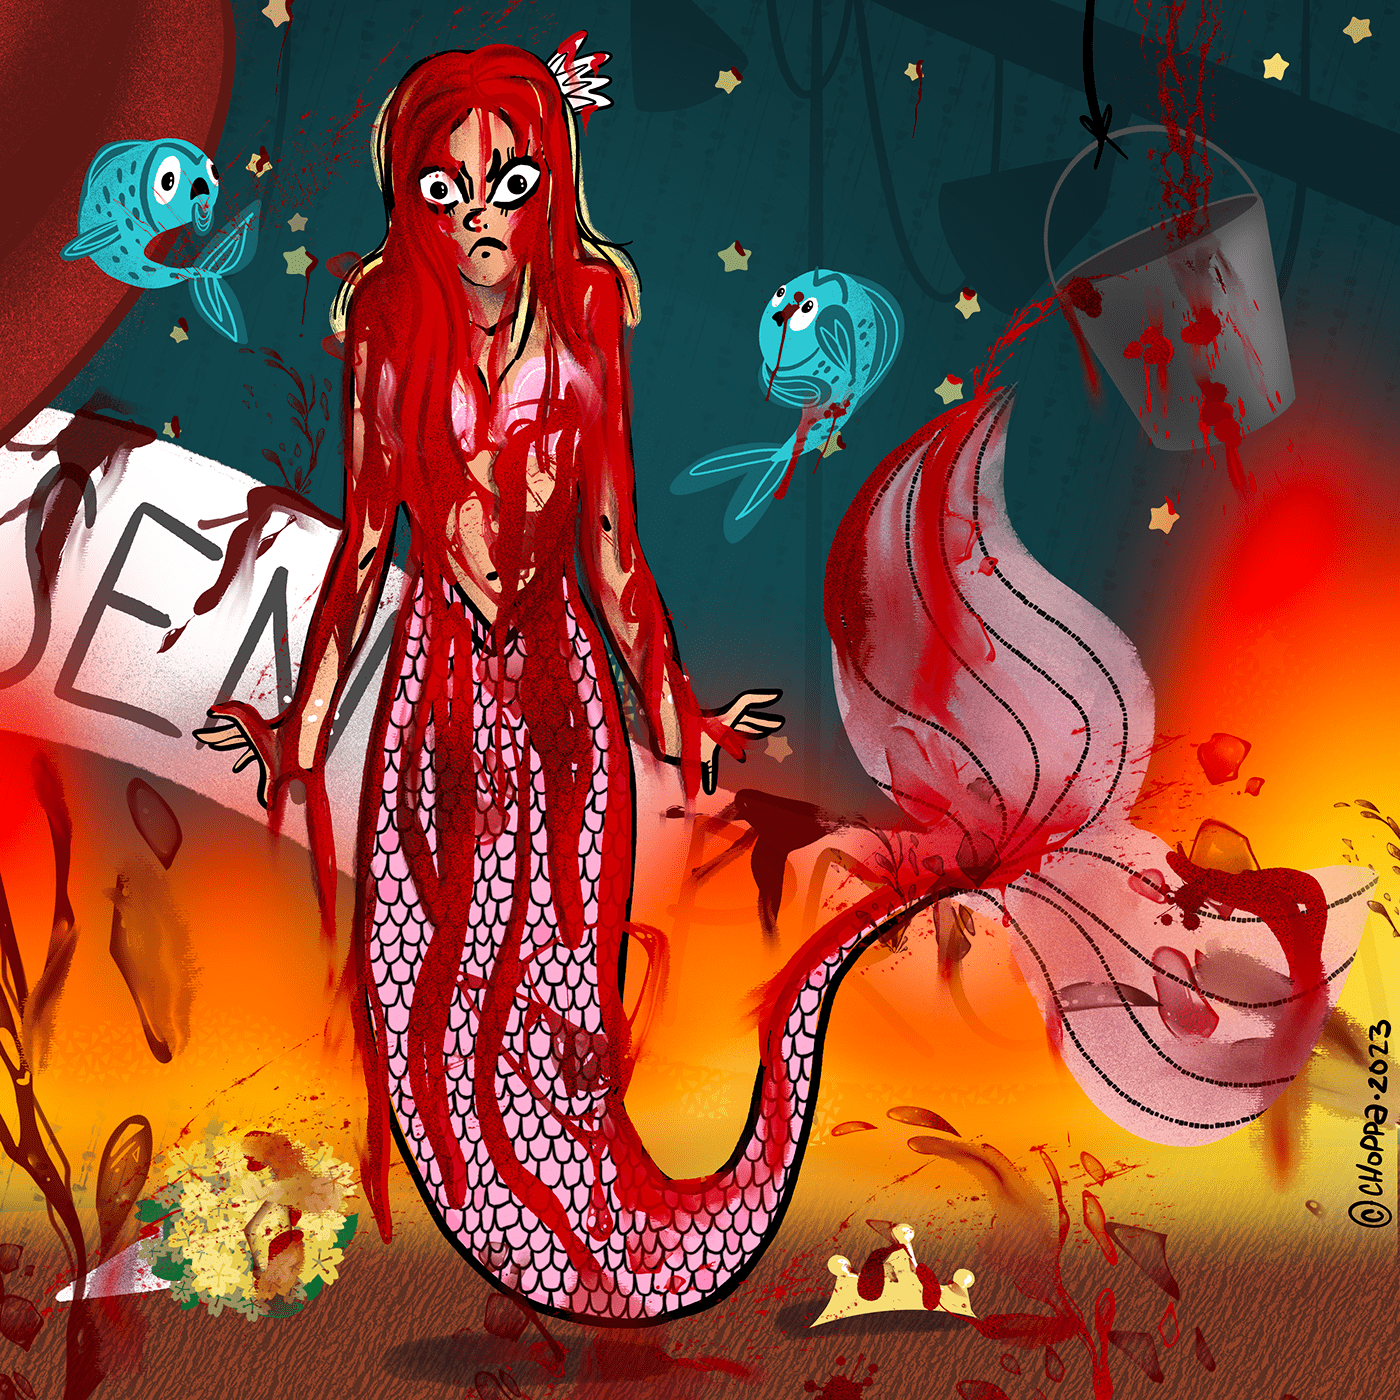 mermaid mermaids mermaid illustration mermay Procreate artwork digital illustration art